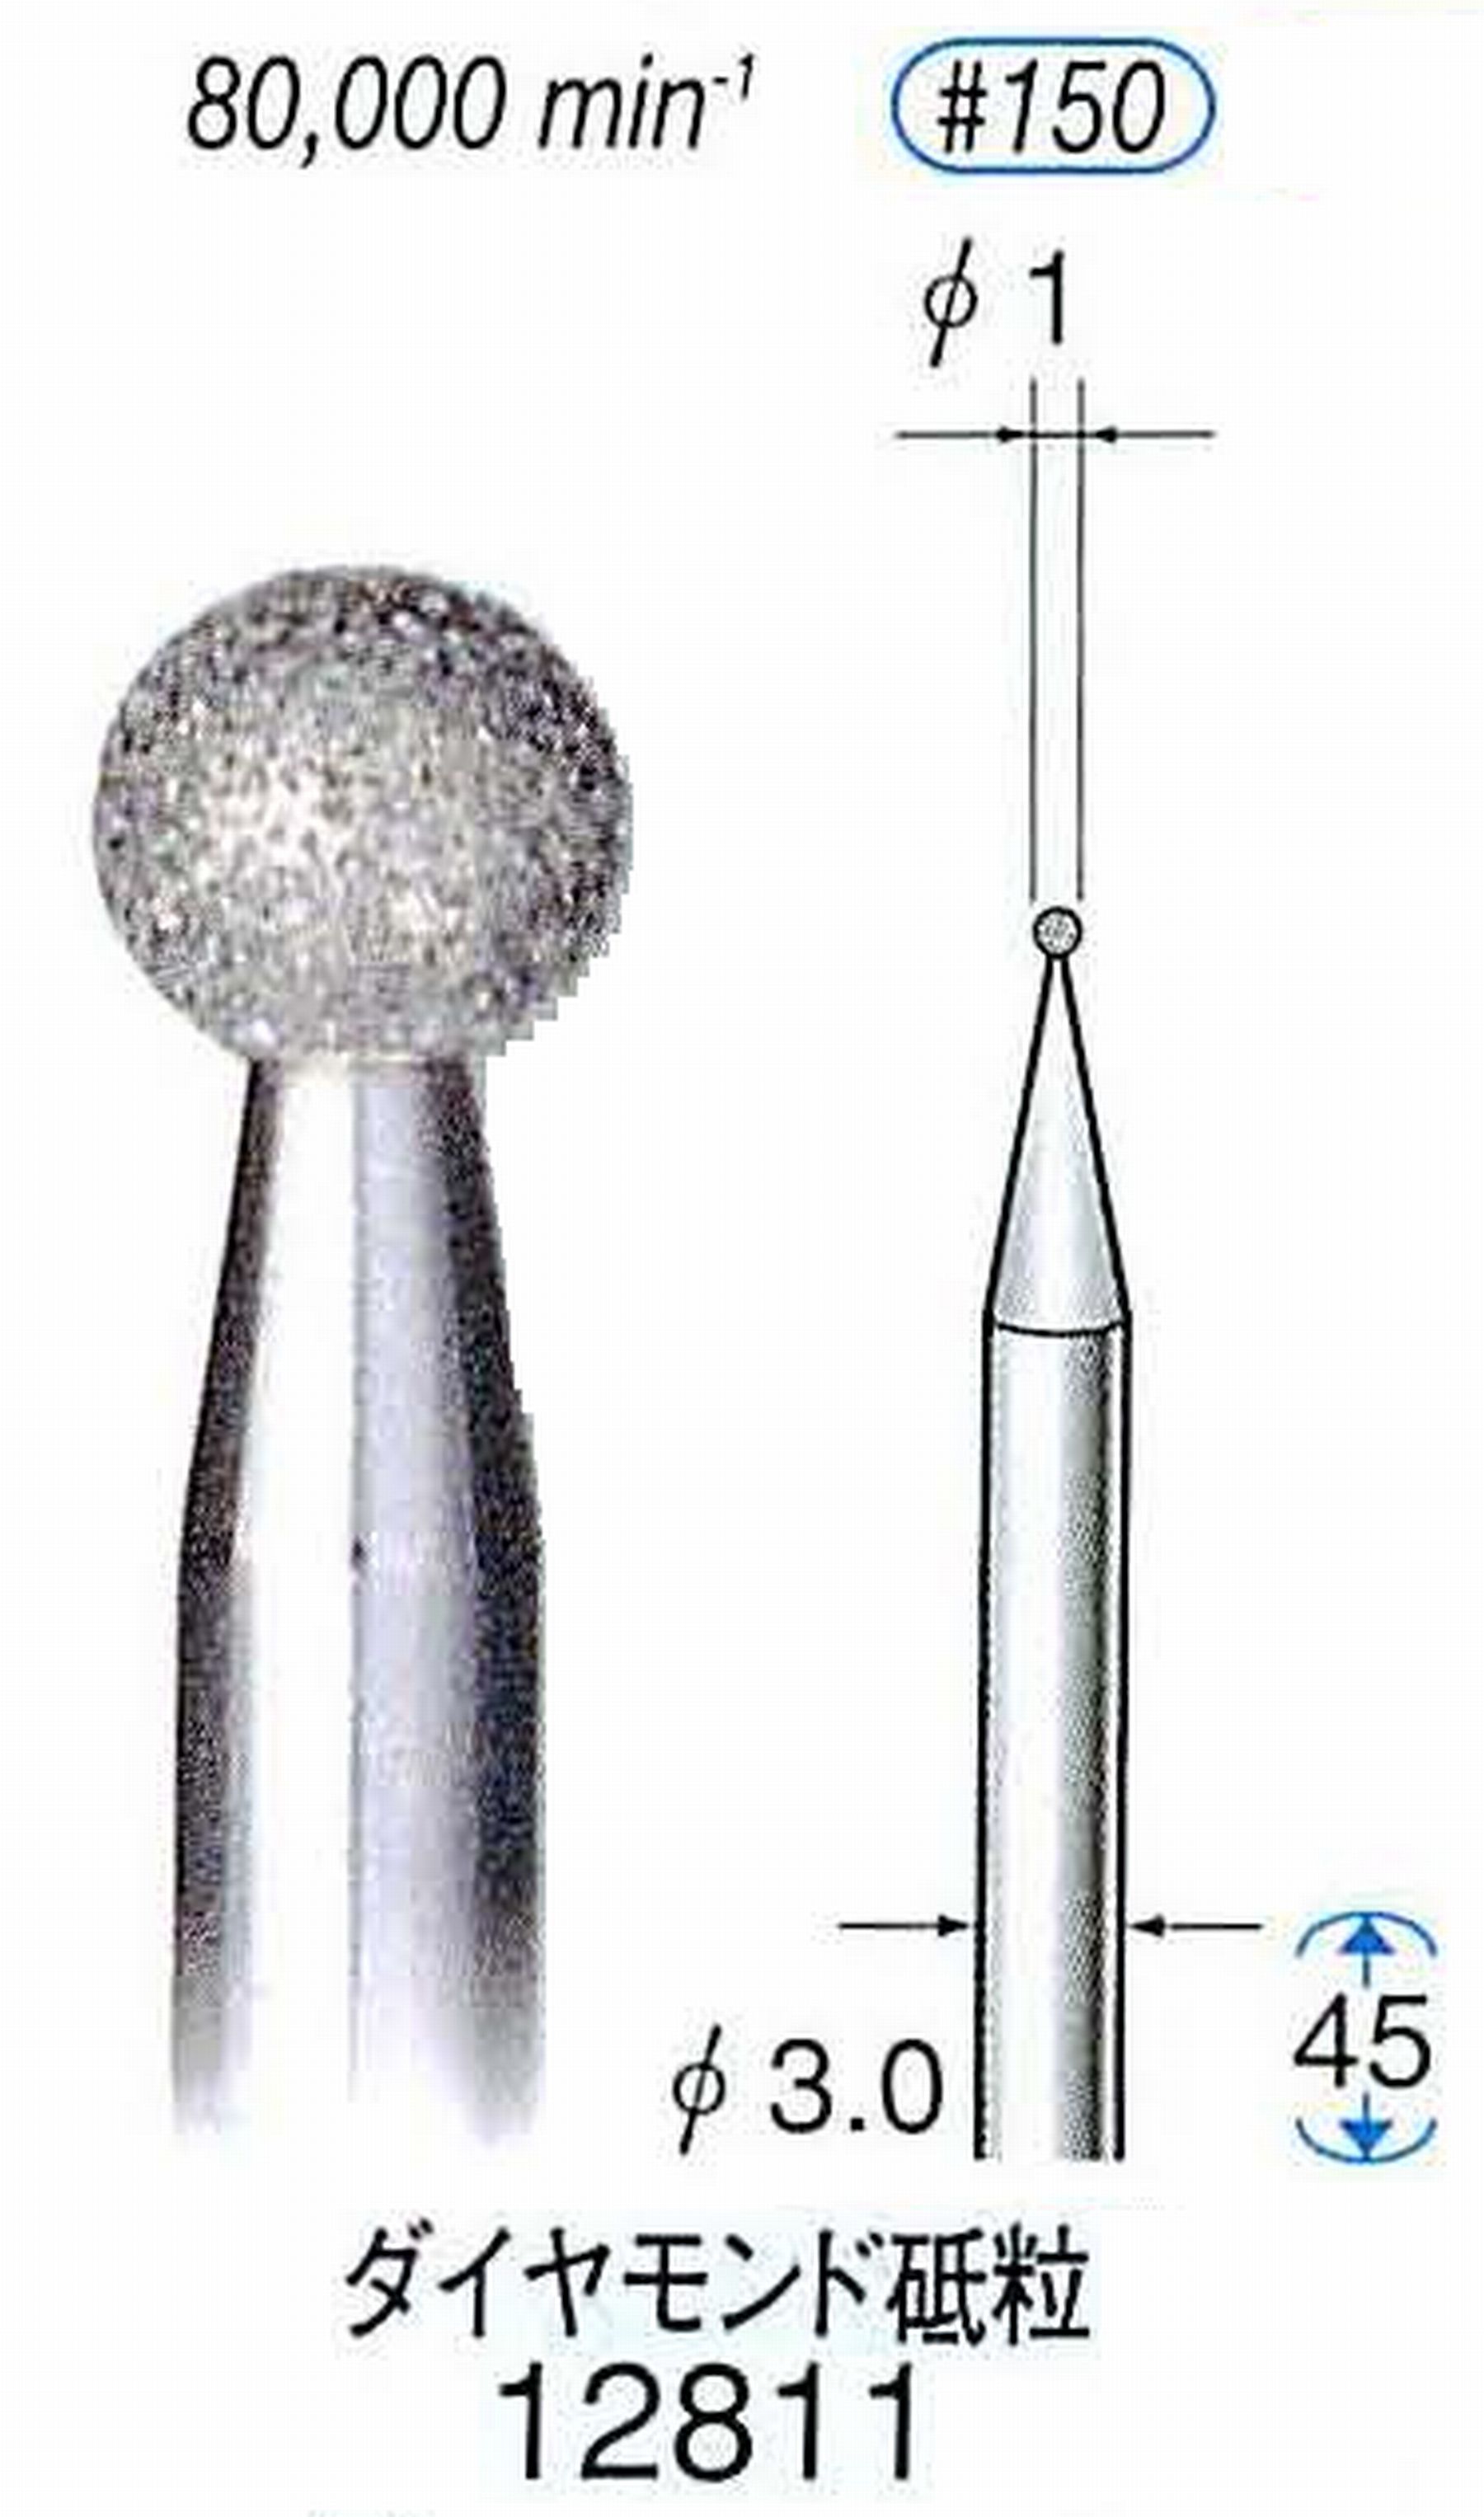 ナカニシ/NAKANISHI クラフト・ホビー用ダイヤモンドバー ダイヤモンド砥粒 軸径(シャンク)φ3.0mm 12811